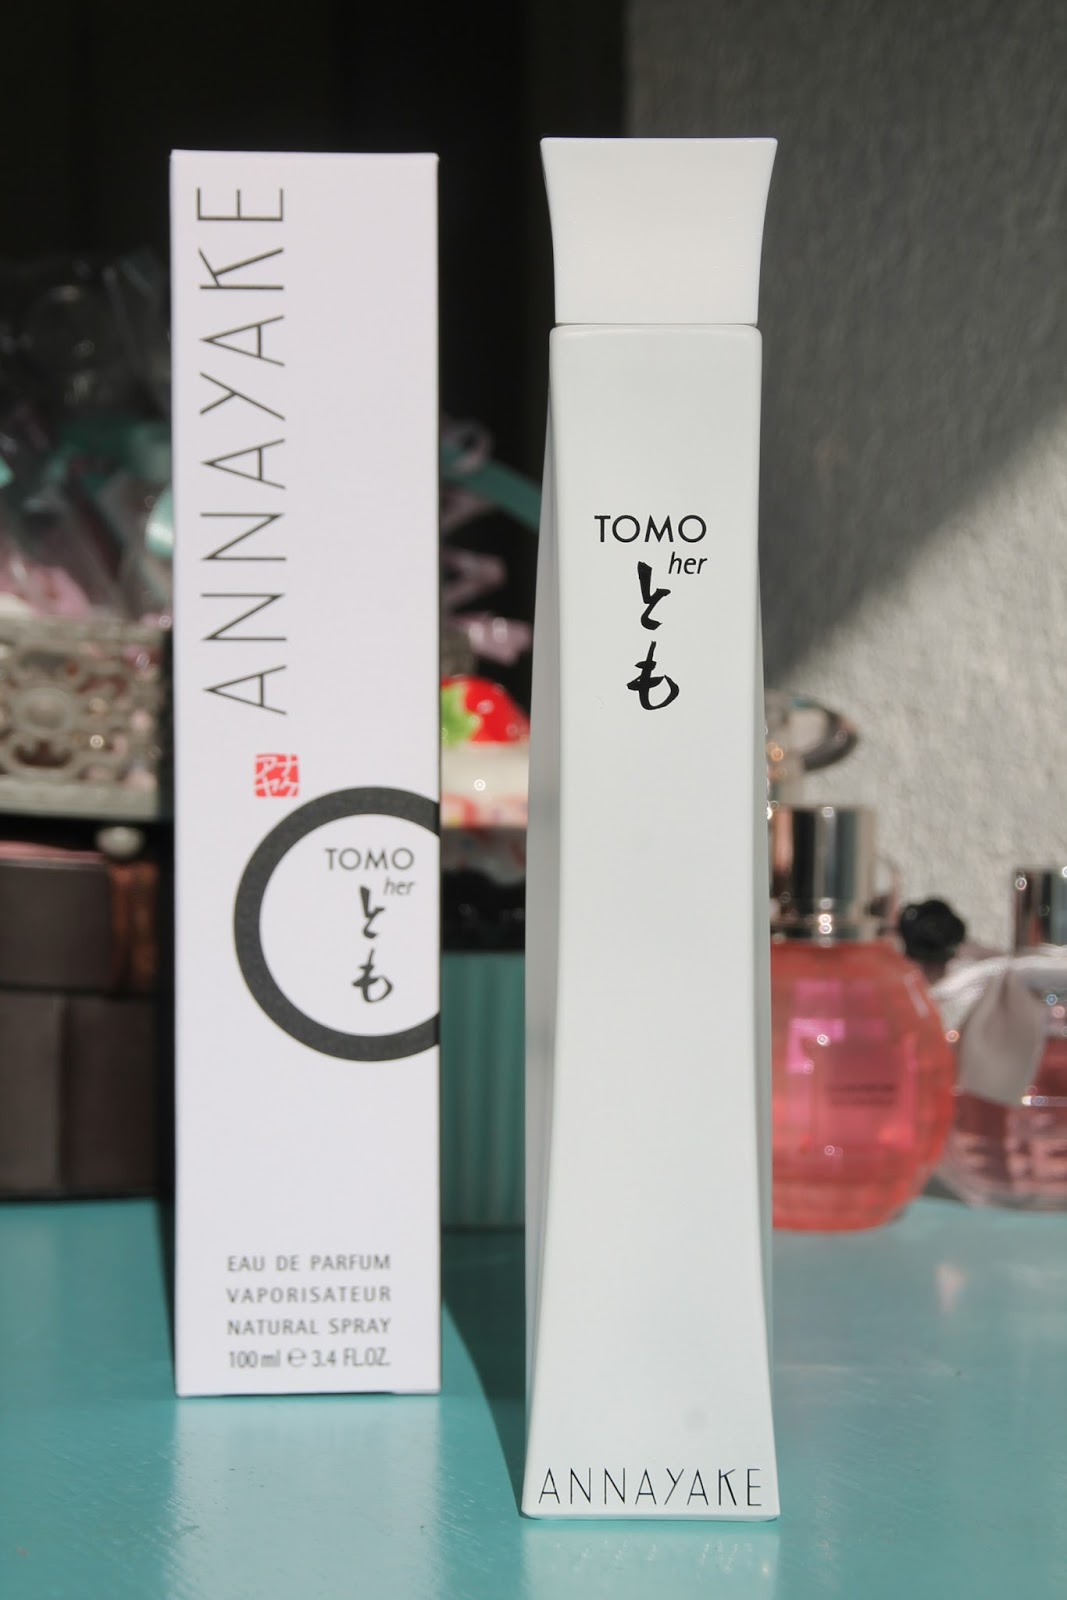 Crystal's Reviews: Annayake Tomo for her eau de parfum